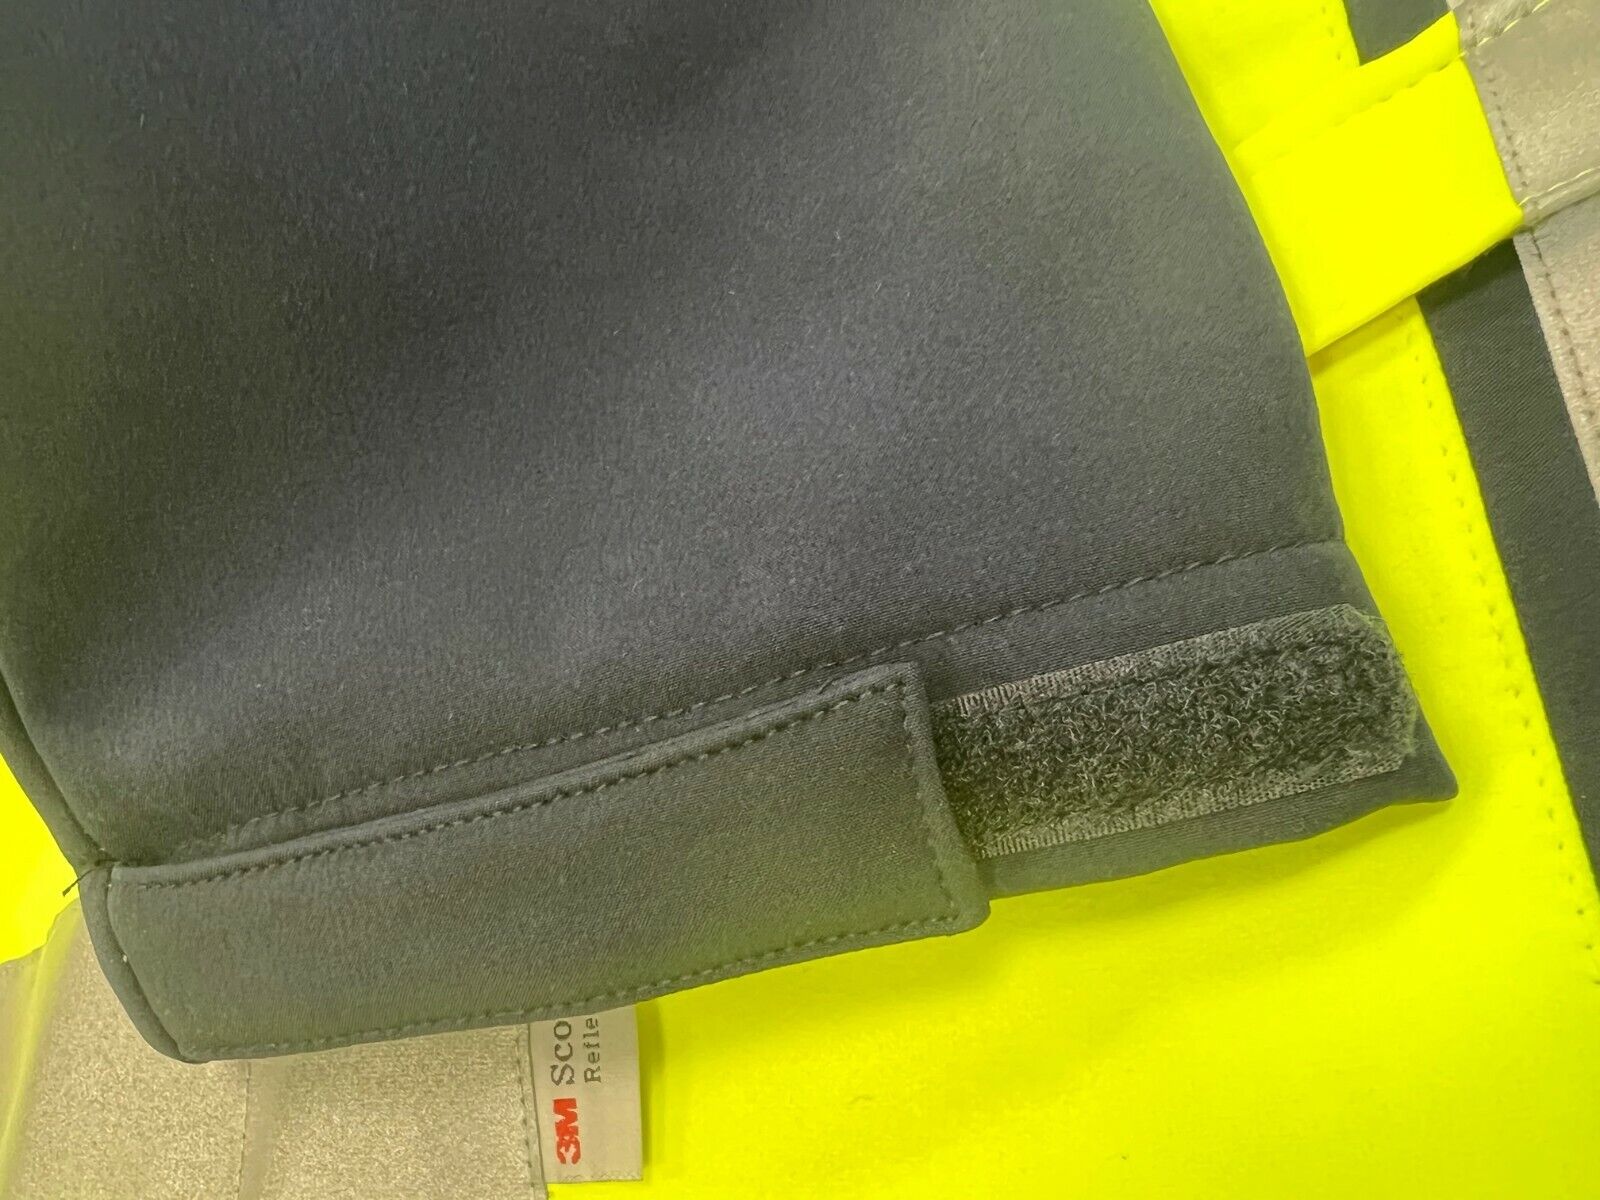 Warnschutz Softshelljacke Regenjacke Arbeitsjacke EN 20471 Klasse2 gelb S - XXXL